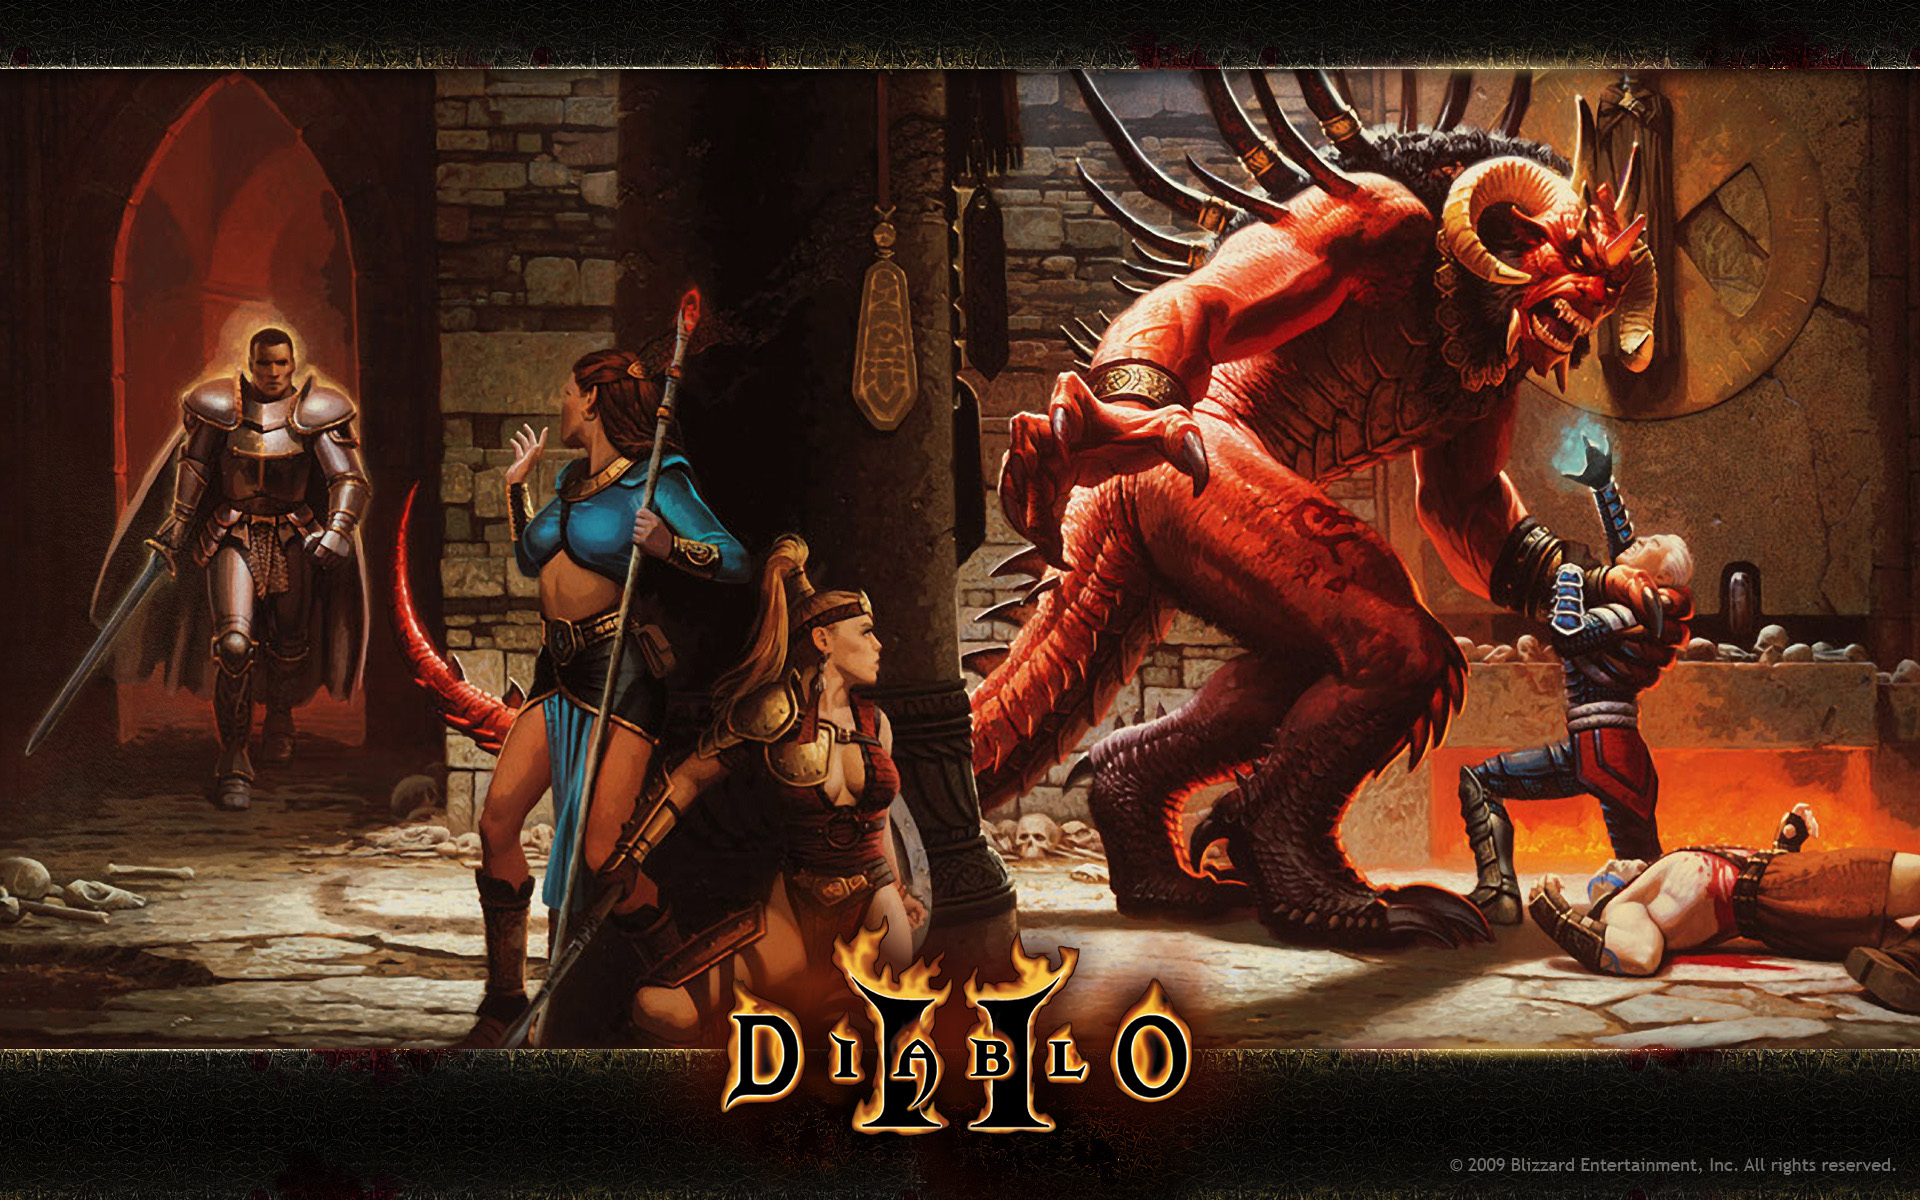 Diablo 2 Video Games Diablo Video Game Art Video Game Characters Creature Armor Sword Women Demon 1920x1200